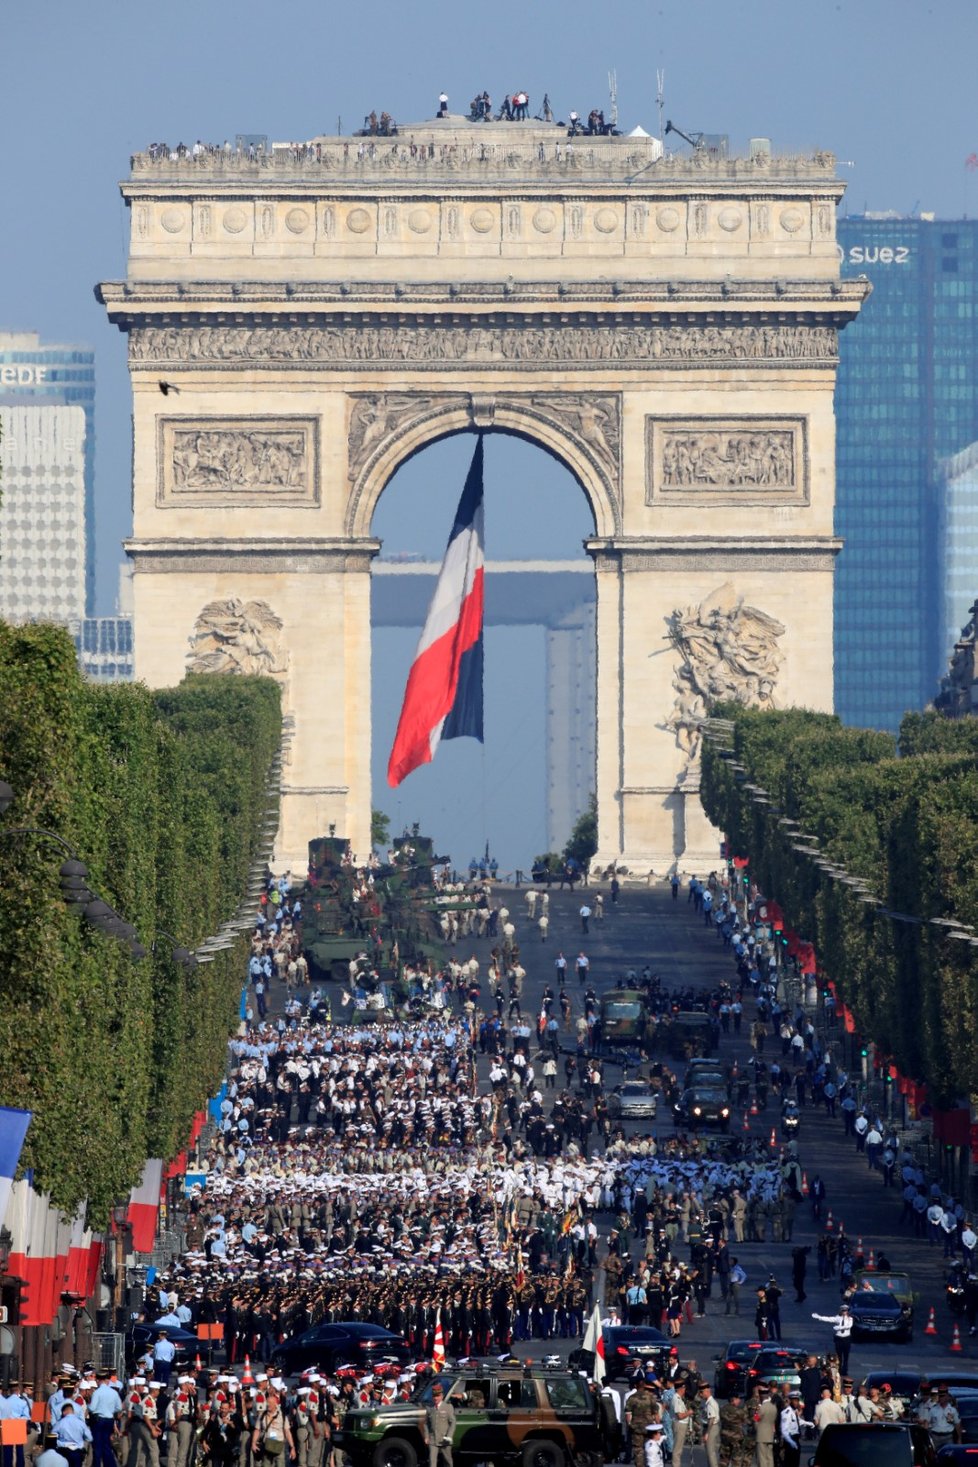 Vojáci se řadí na Champs, Elysees v Paříži před velkou přehlídkou.